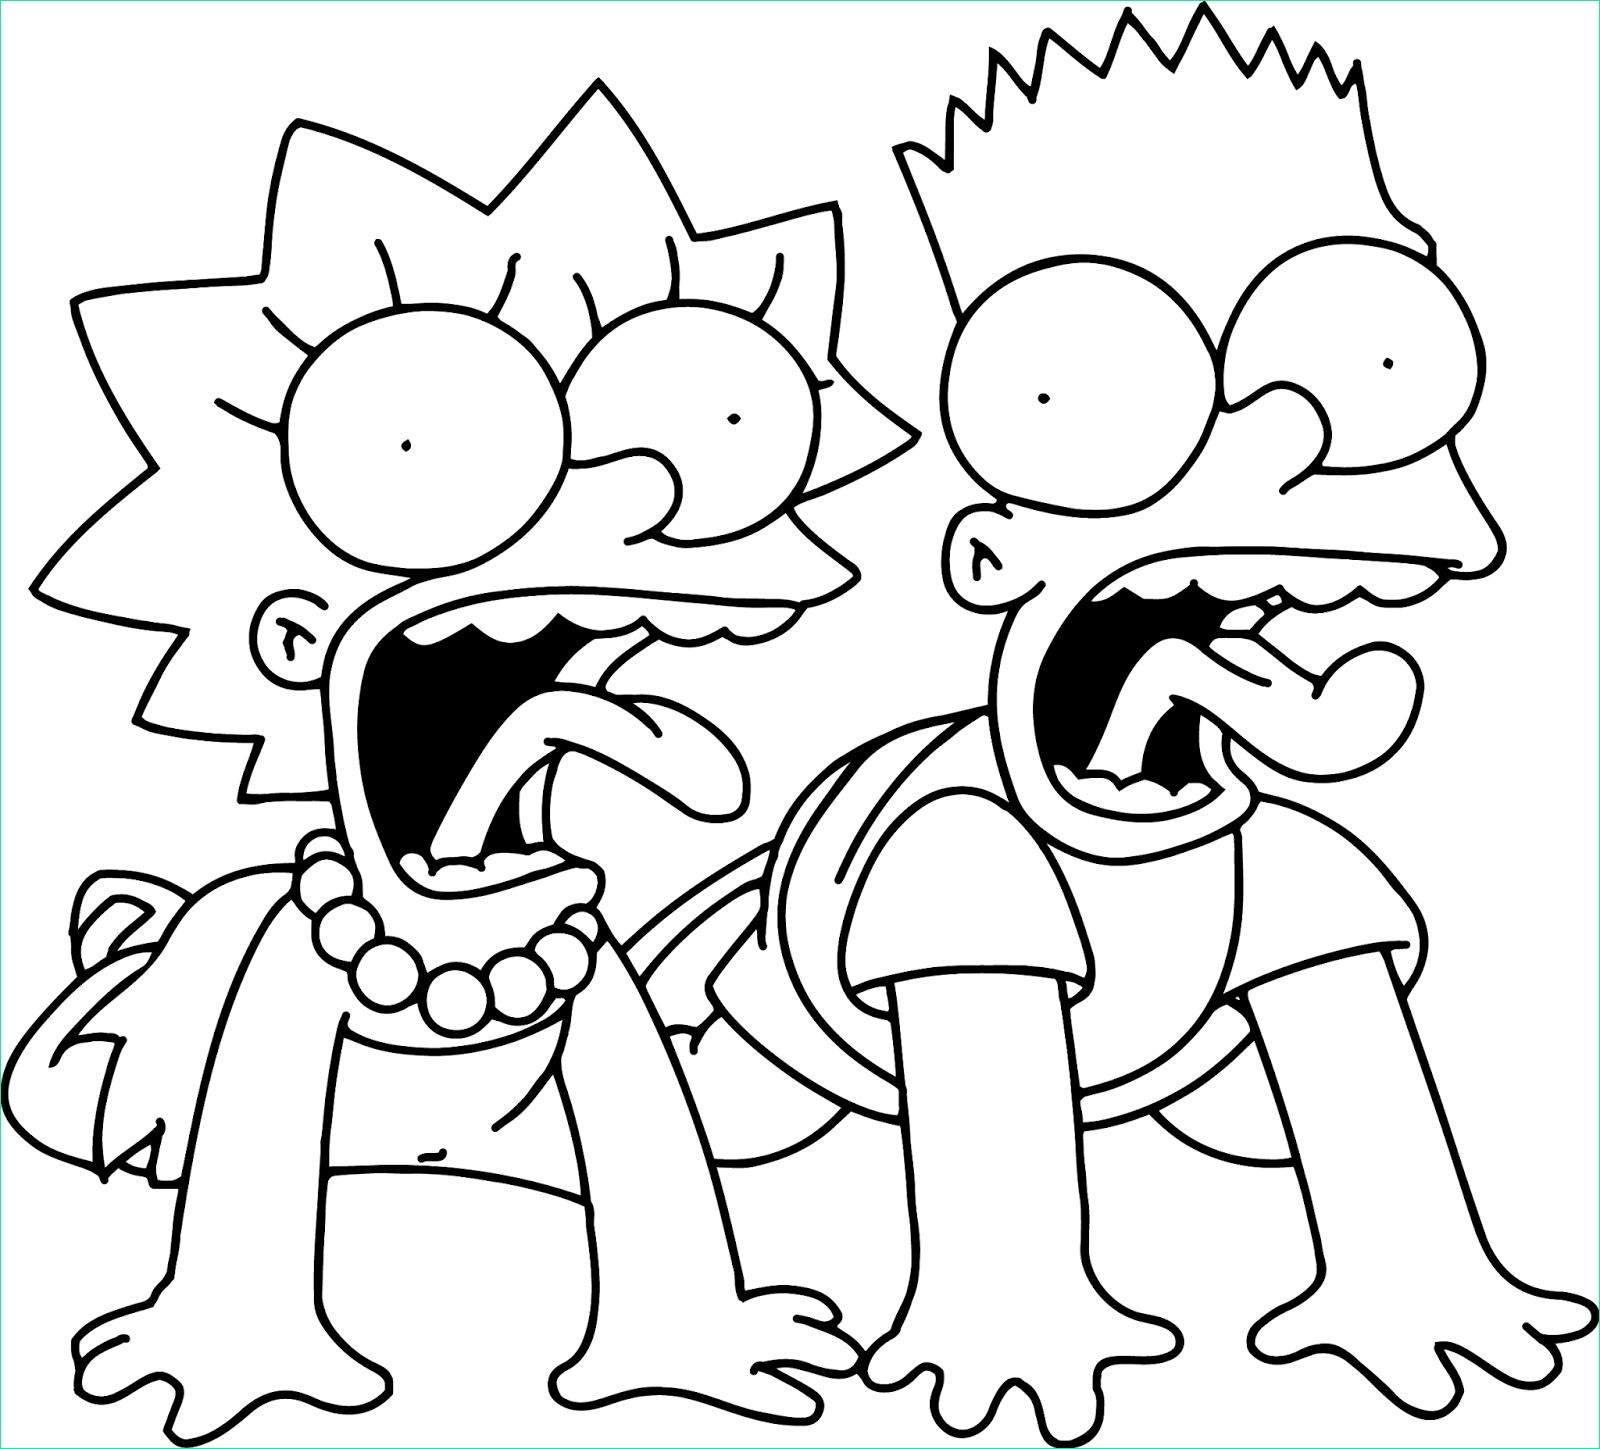 Coloriage Simpsons Impressionnant Image Coloriage Simpson Bart Dessin Et Coloriage